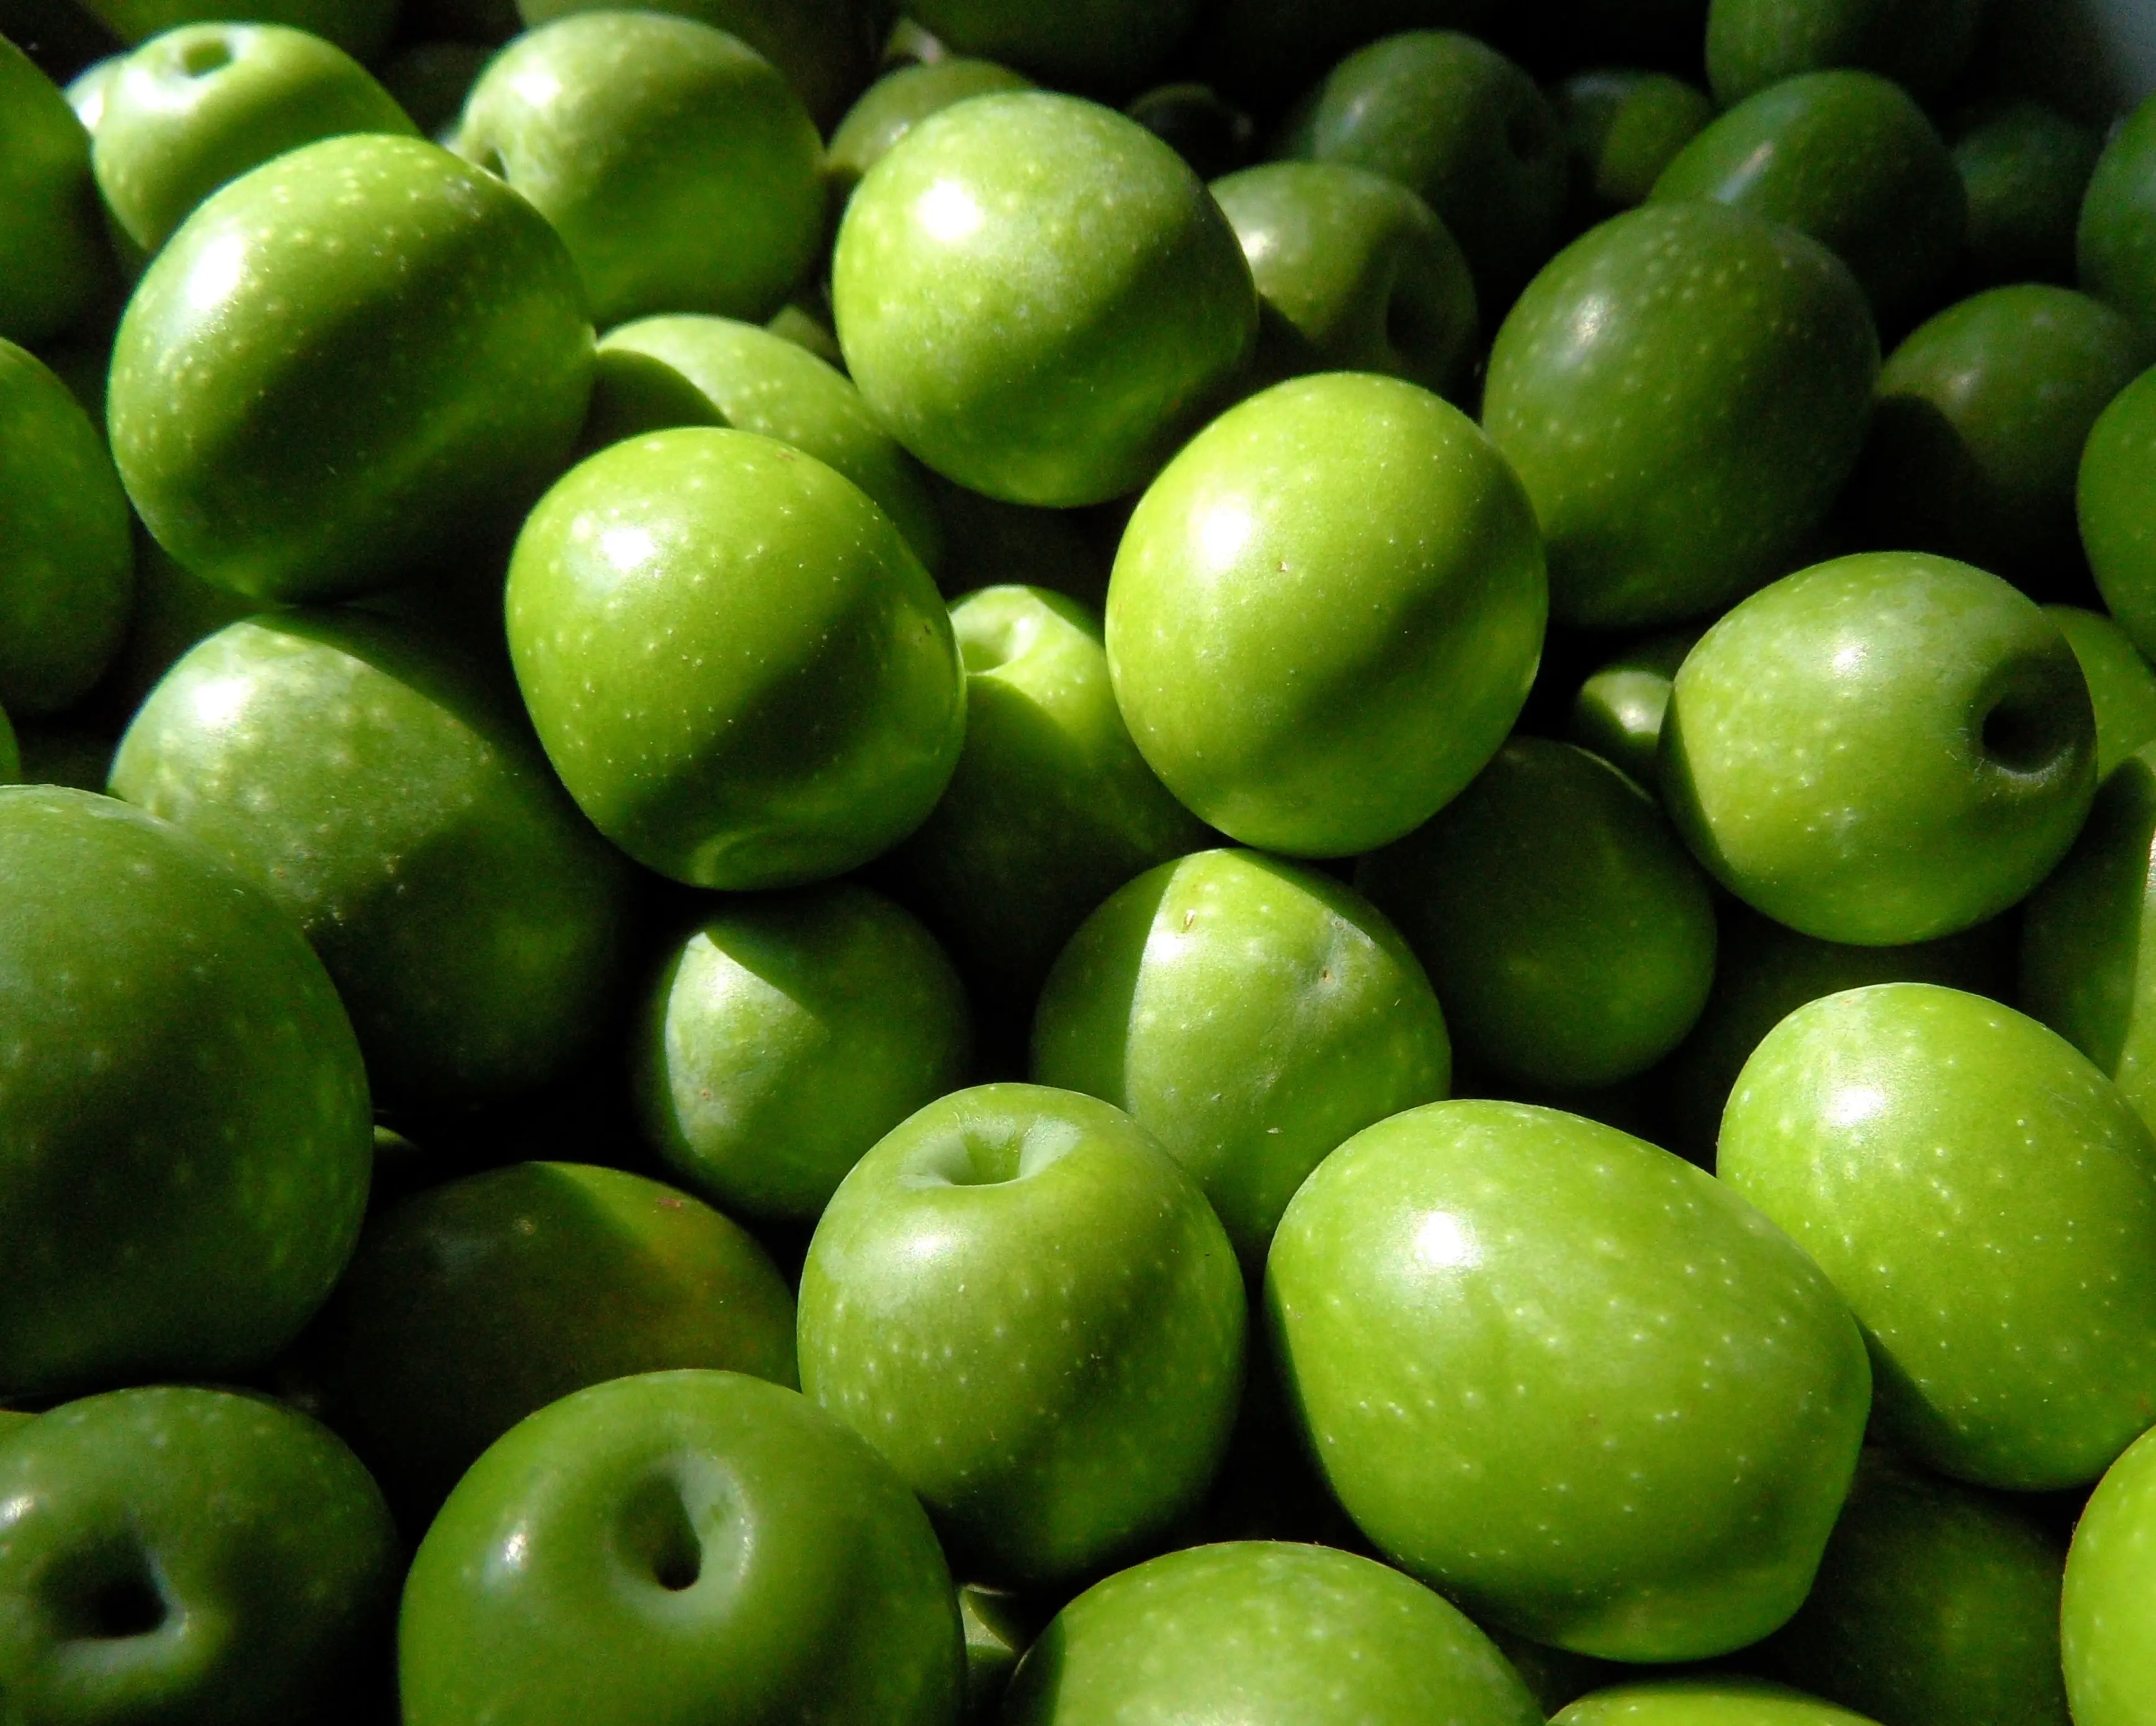 Beste und gute Qualität frische Oliven zum Großhandels preis